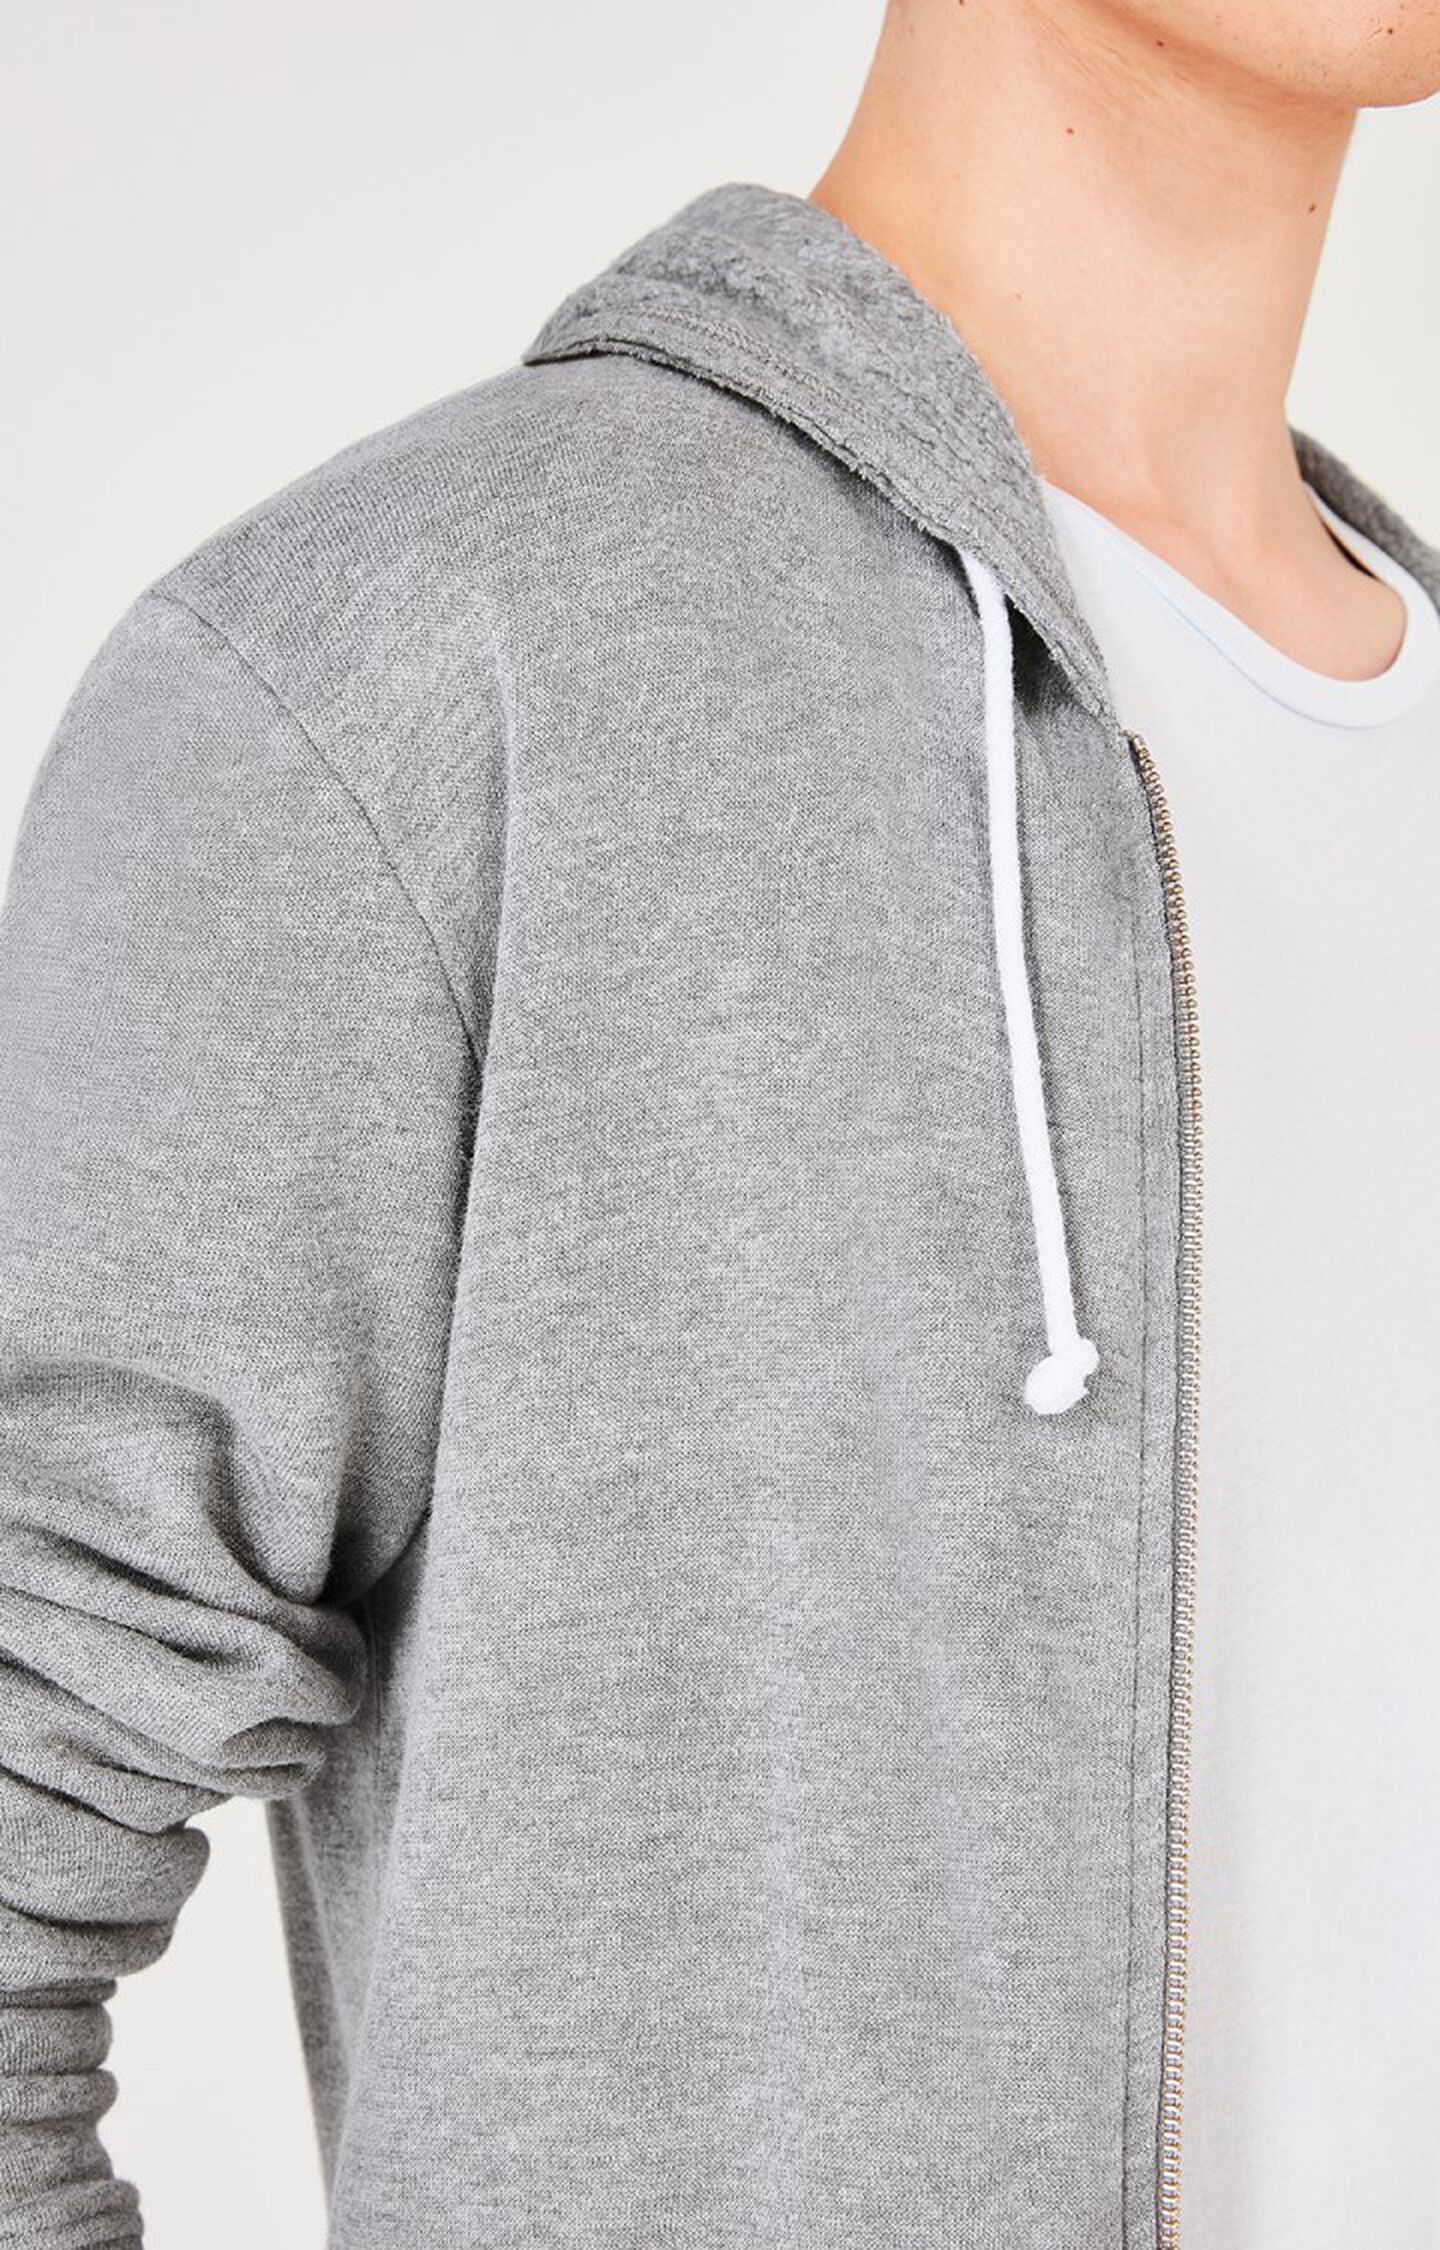 American Vintage Men's Sweatshirt - Grey - XL